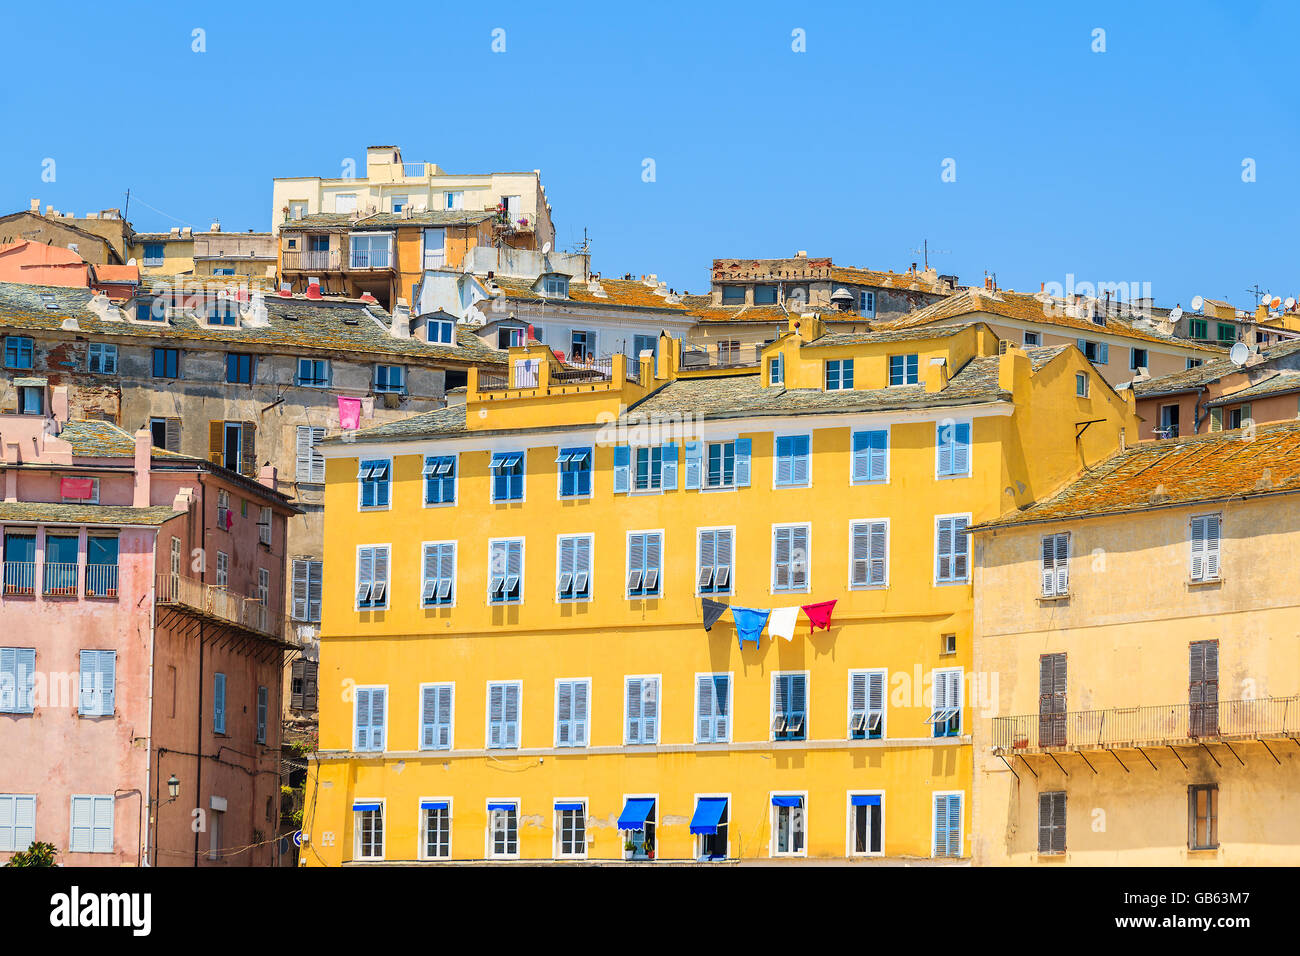 Une vue sur les maisons typiques à Bastia, port de l'île Corse, France Banque D'Images